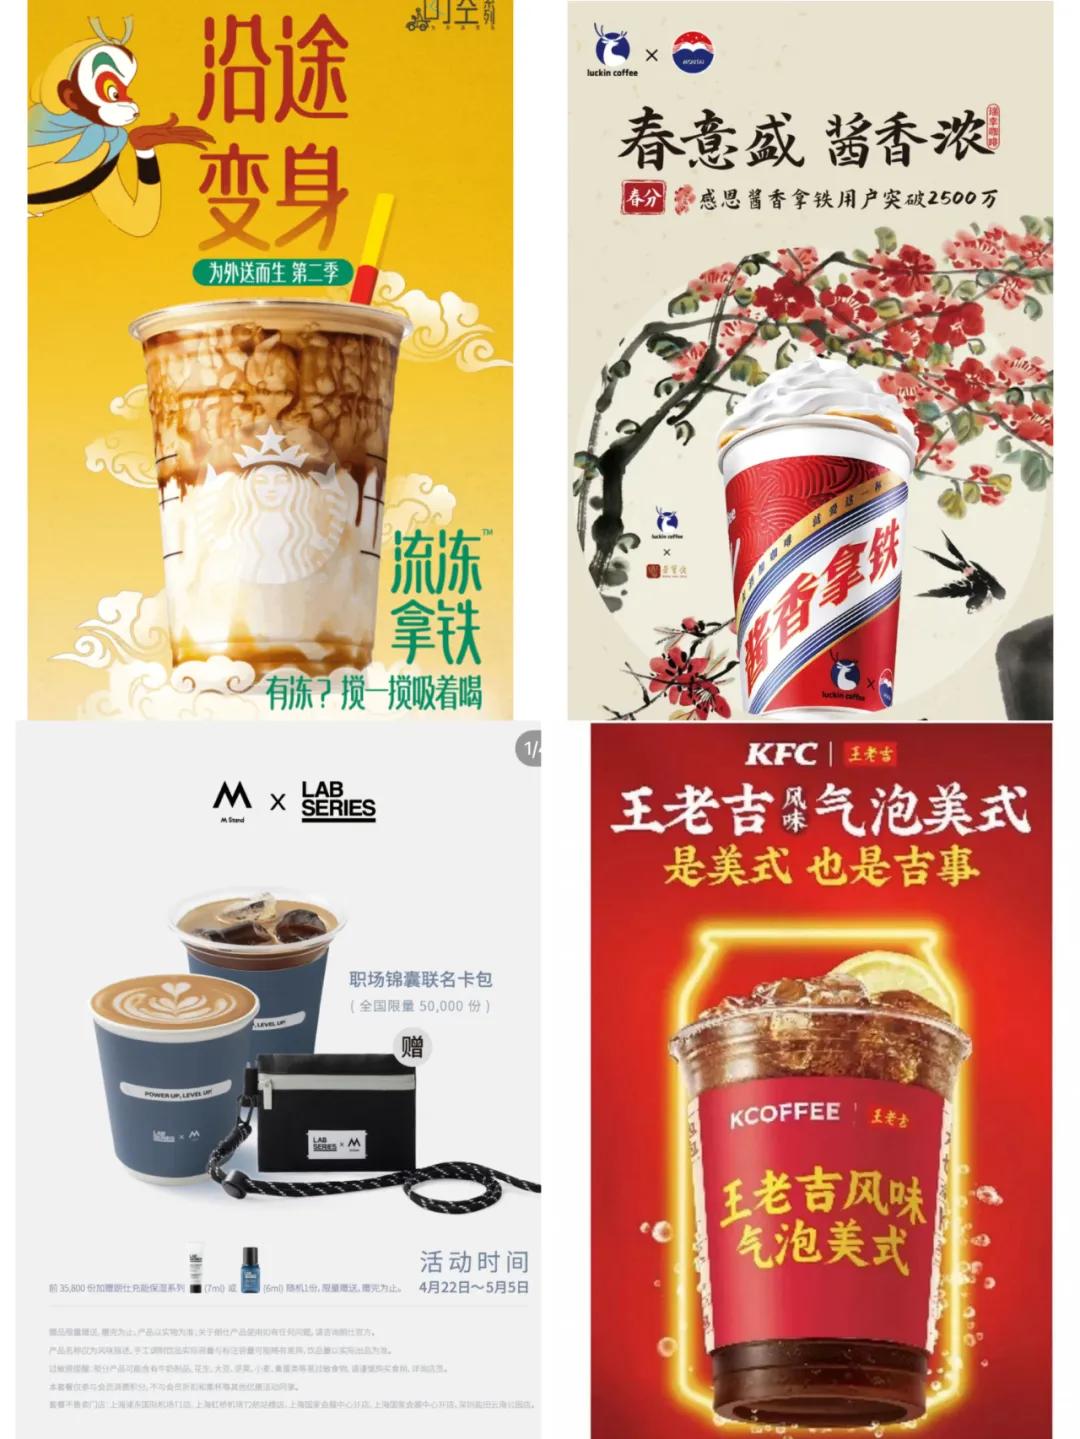 不同咖啡品牌近期联名案例，图源：品牌社交媒体